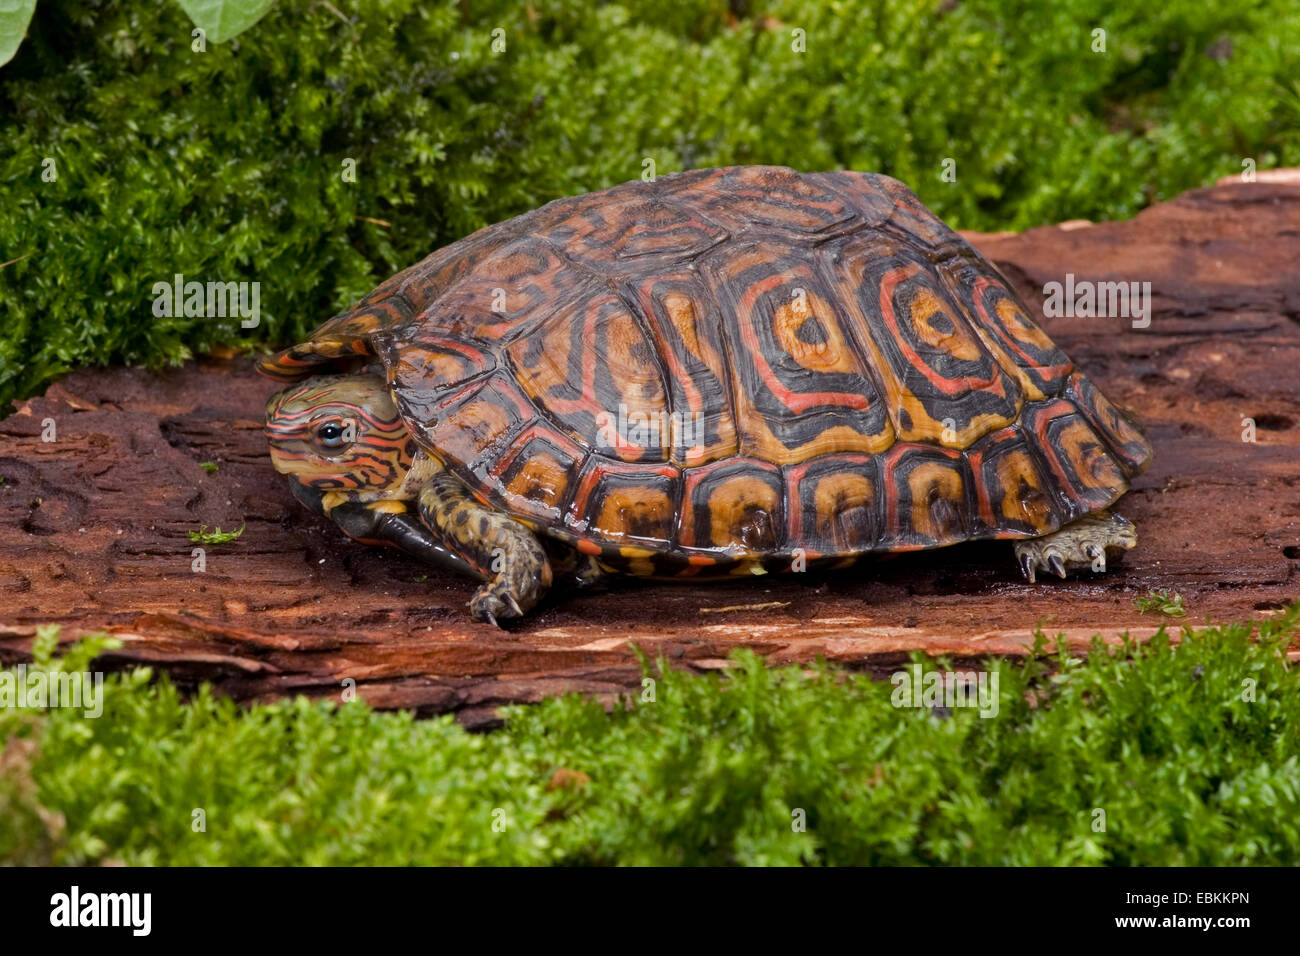 La tortuga de madera pintada, adornos en madera tortuga (Rhinoclemmys pulcherrima), sobre una piedra Foto de stock